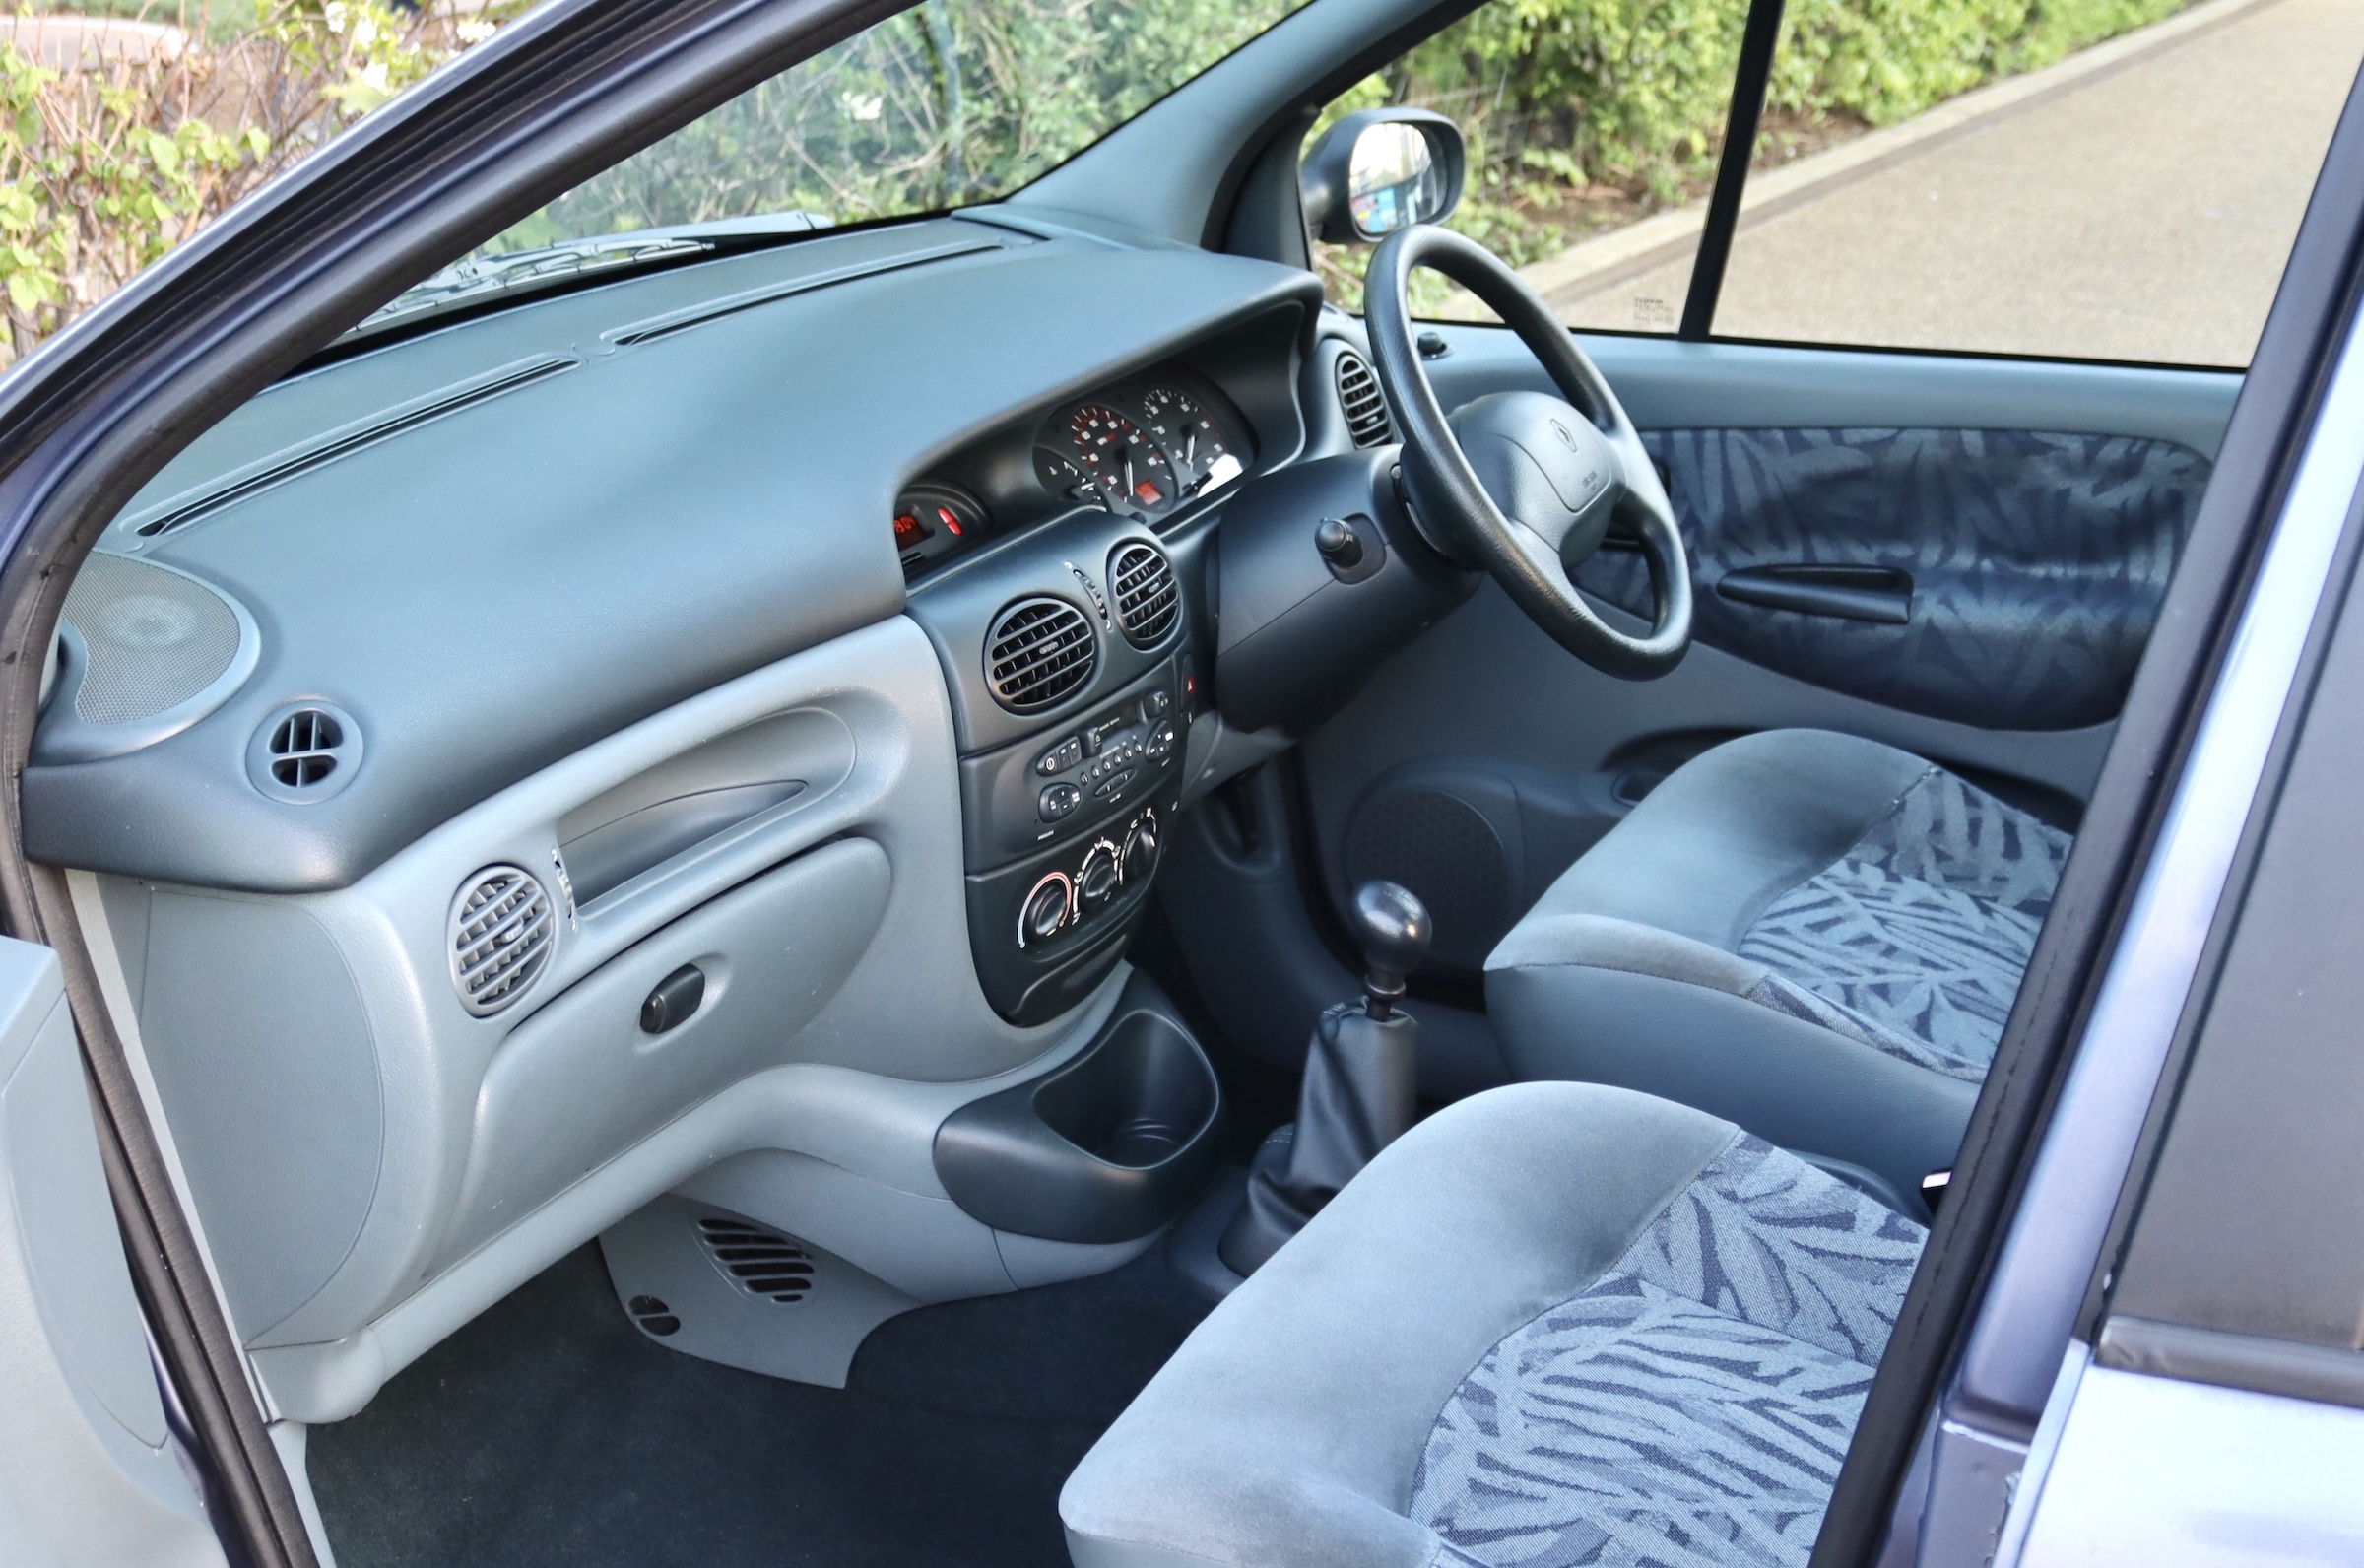 Unexceptional Renault Megane Scenic interior